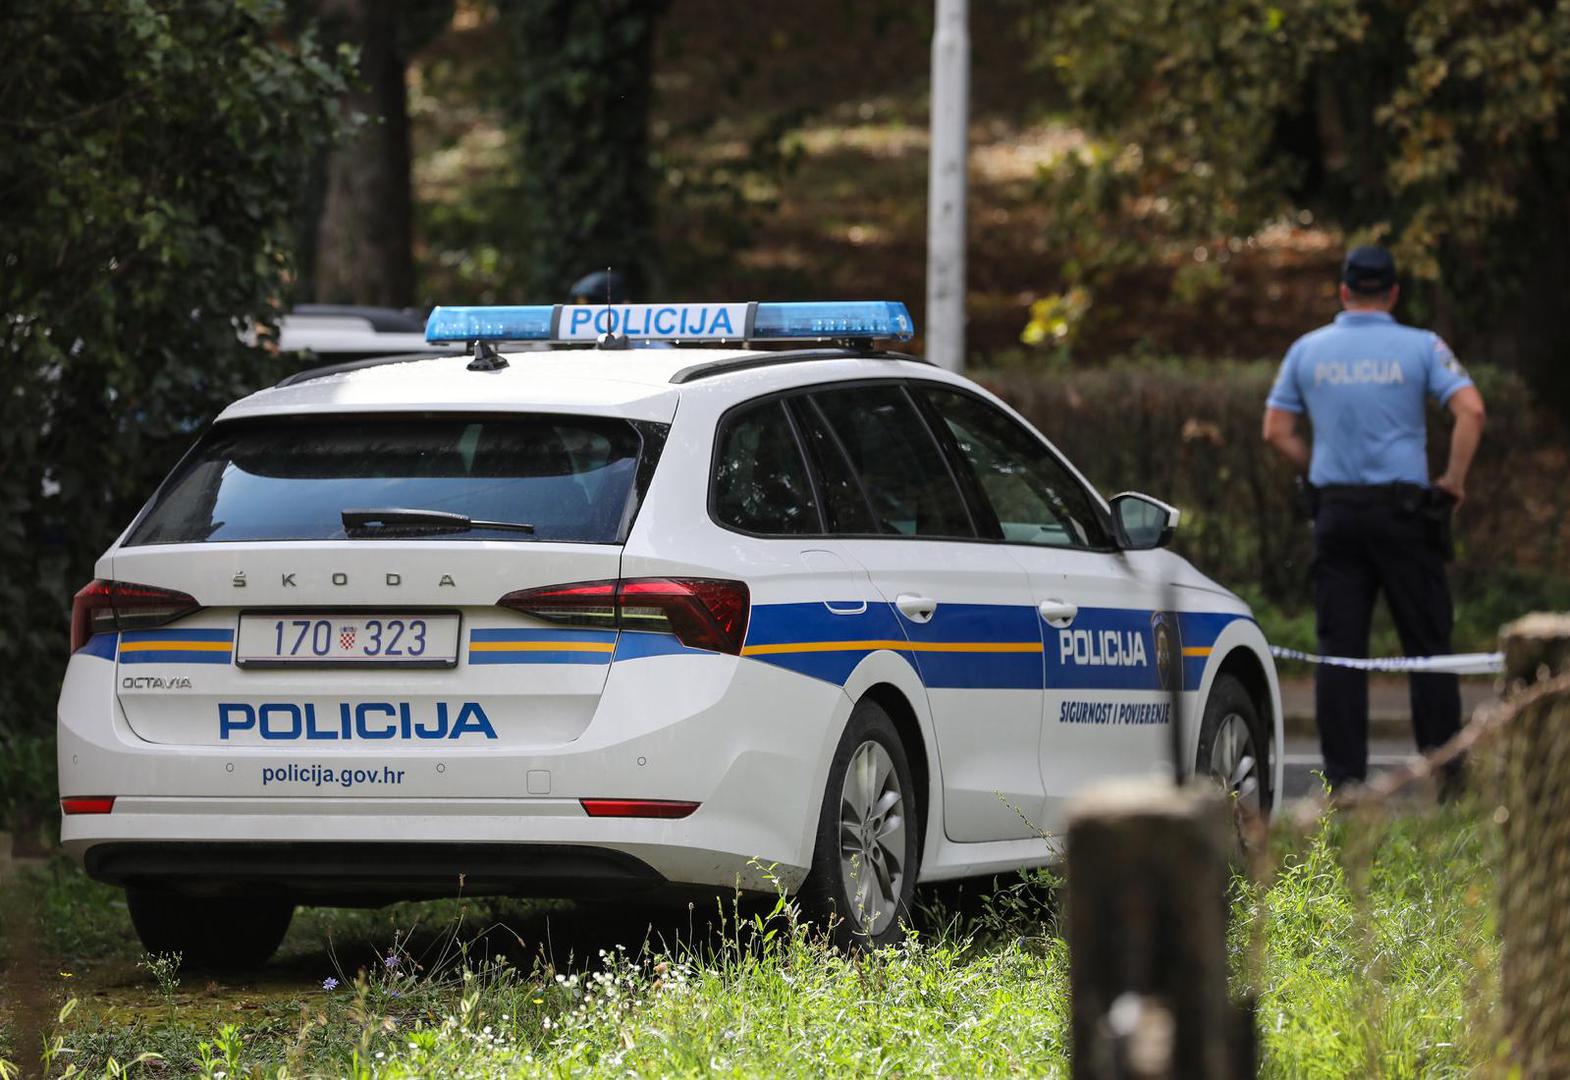 09.09.2022., Oroslavje - Policija osigurava kucu ubijenog mladica u Tvornickoj ulici te pretrazuje okolinu kako bi pronasli oruzje. Photo: Jurica Galoic/PIXSELL